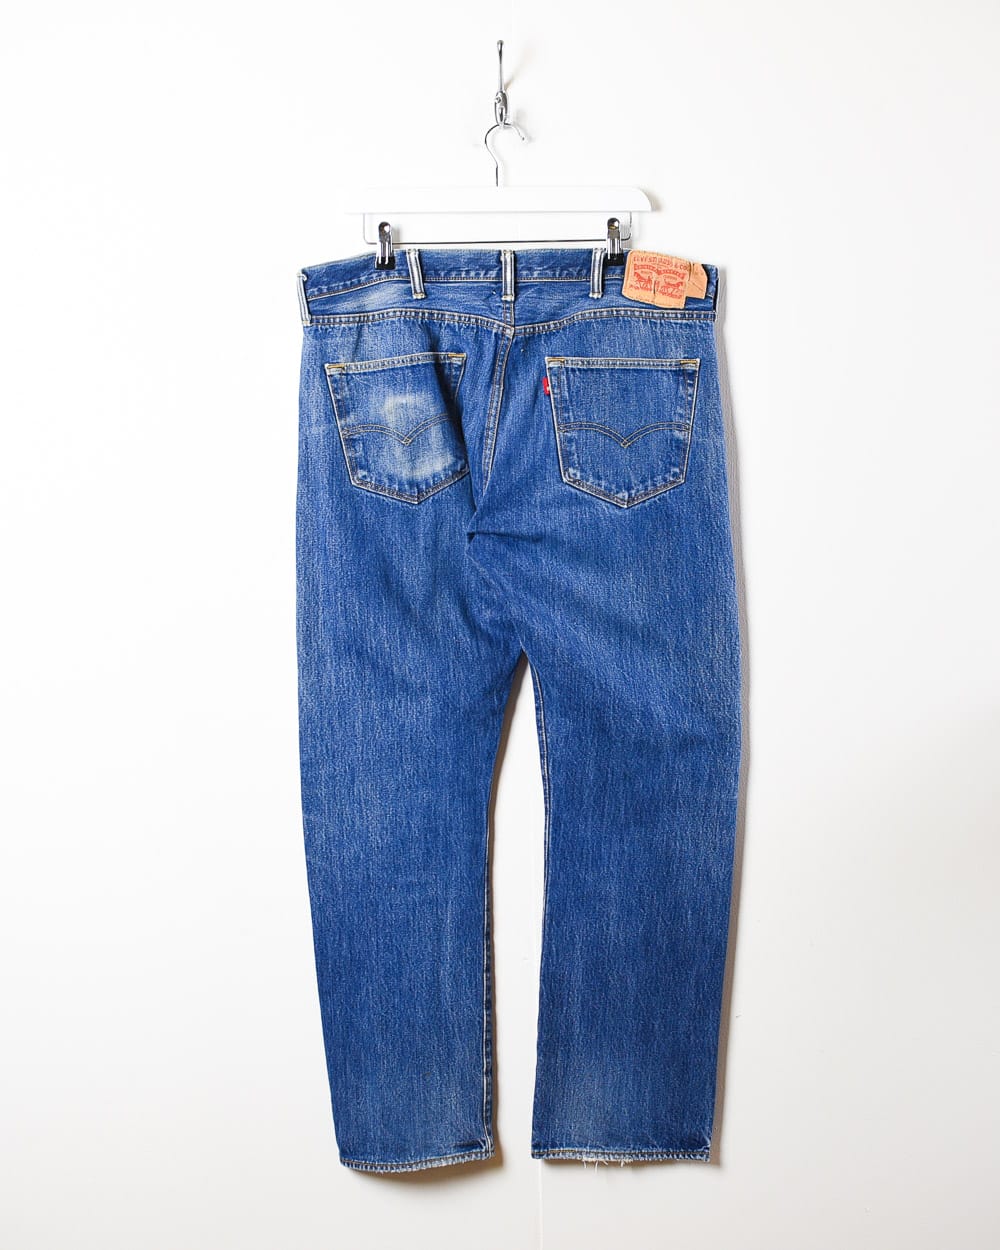 Blue Levi's 501 Jeans - W38 L31